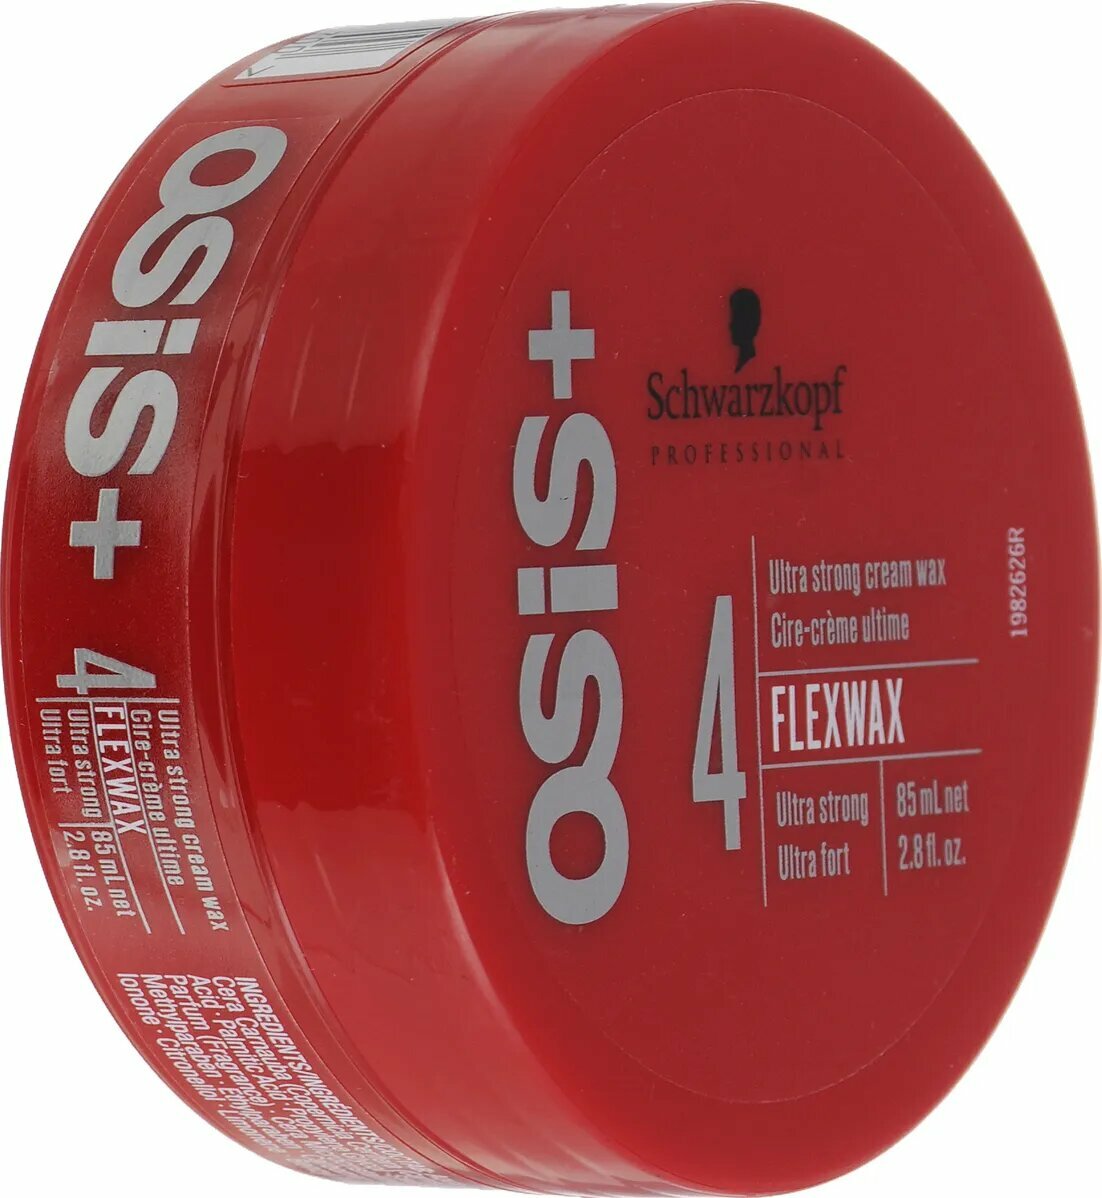 Крем-воск для волос ультрасильной фиксации Schwarzkopf Professional Osis+ Flex Wax 85 мл